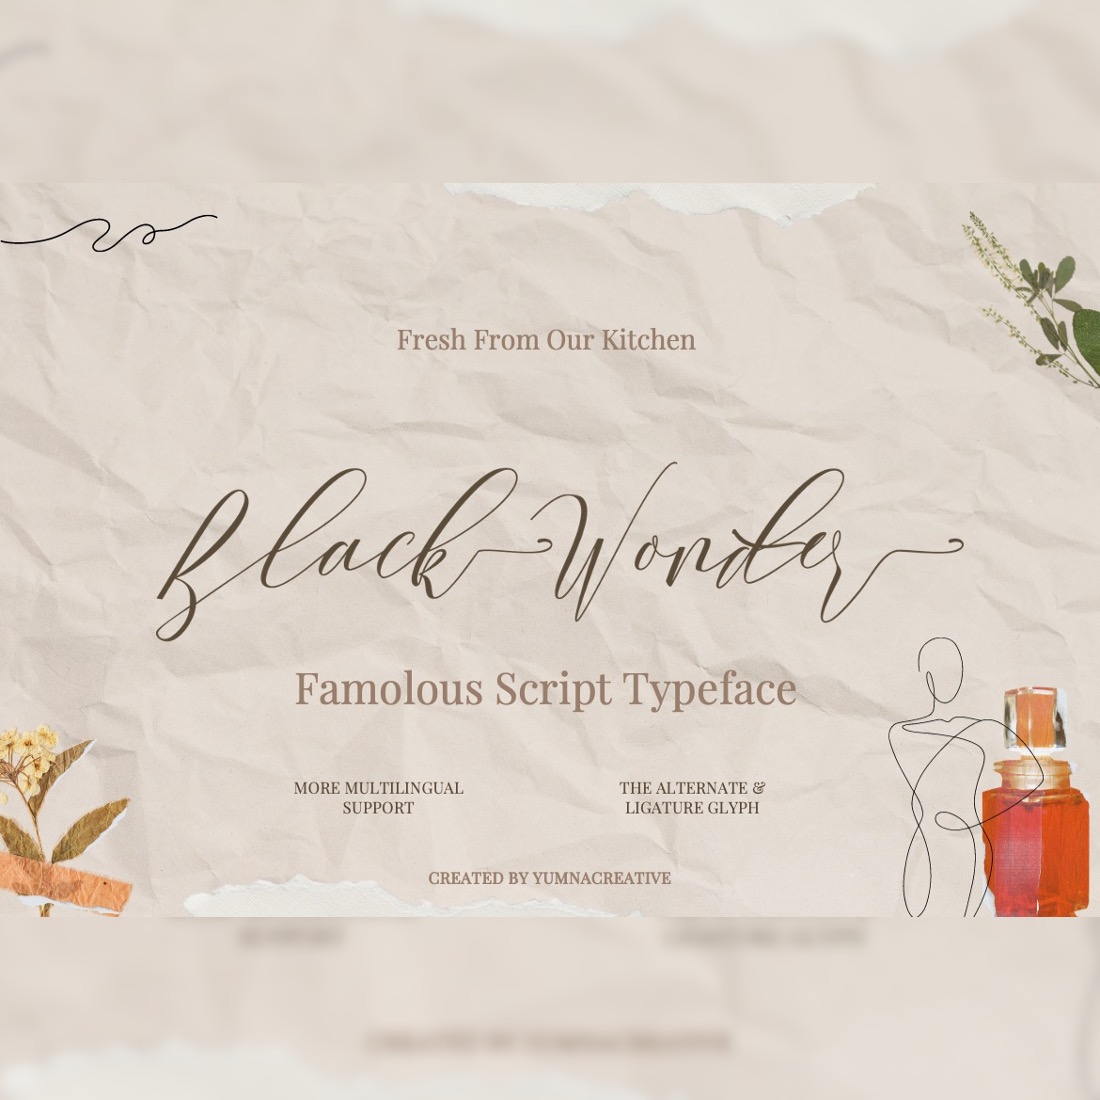 Black Wonder - Script Font cover image.